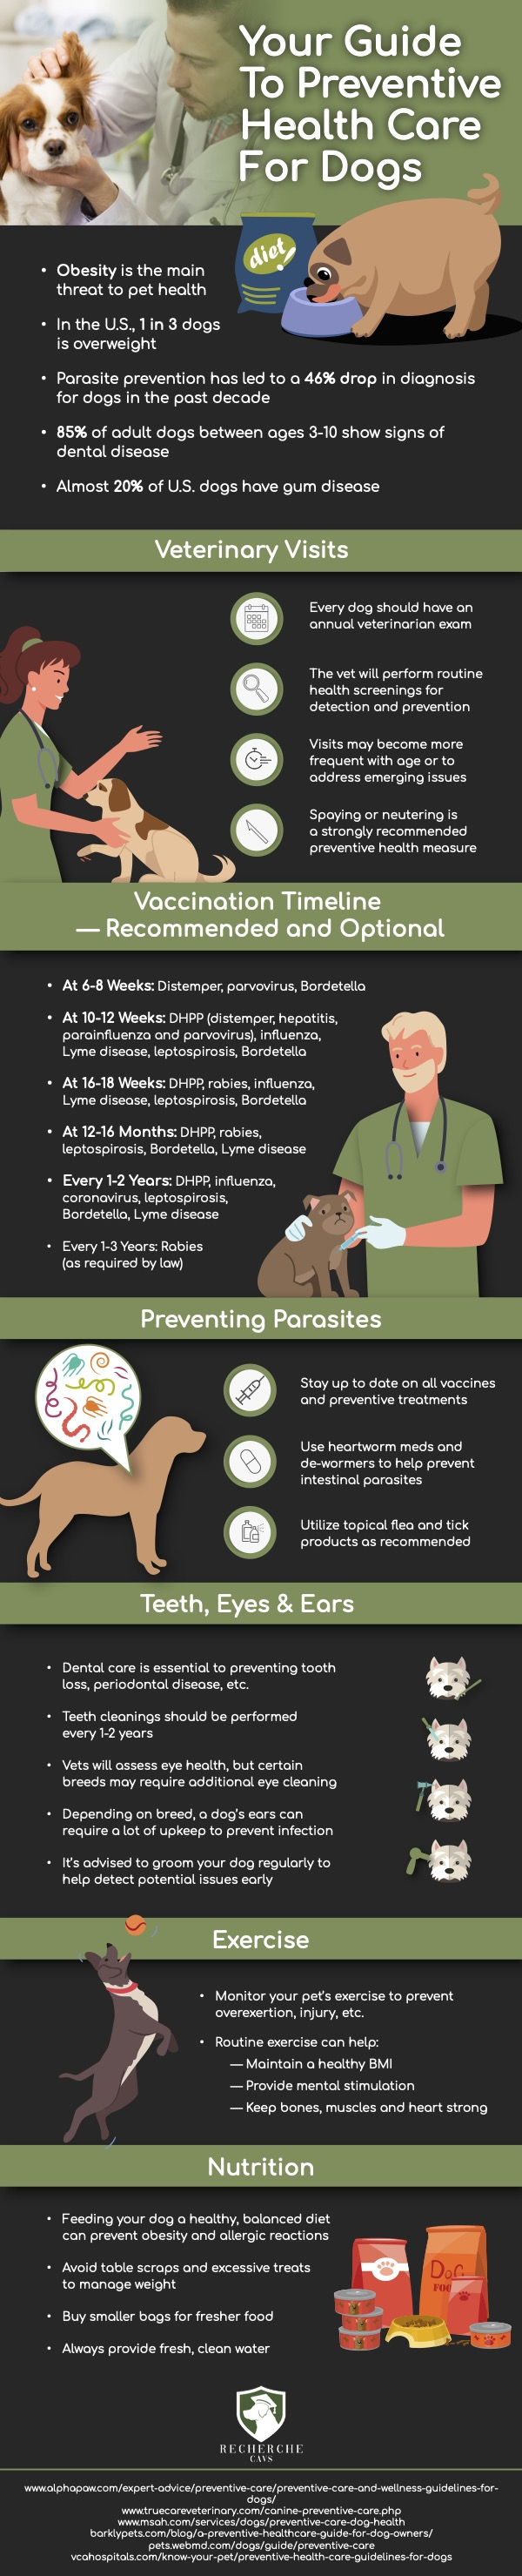 Preventive Health Care for Pets PetPerennials.com